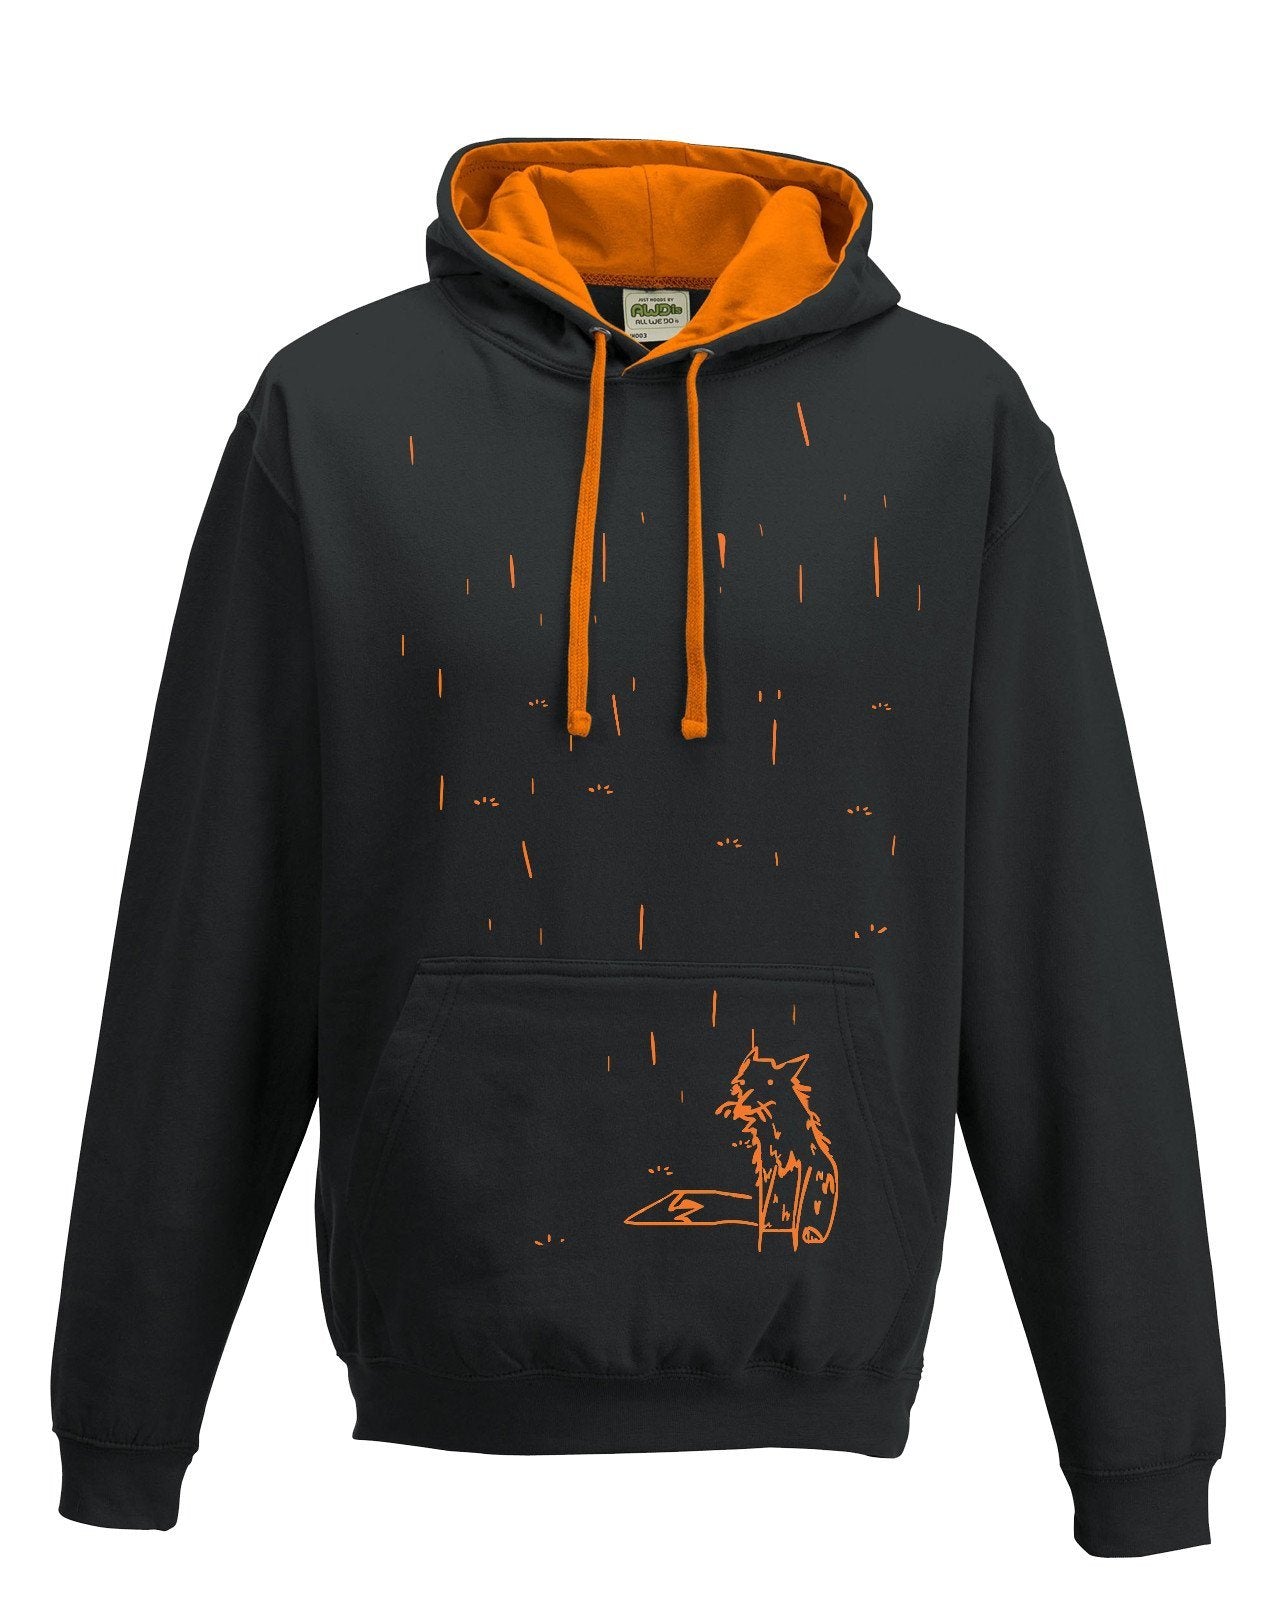 Hoodie - Fox In The Rain Hoodie, Black/orange